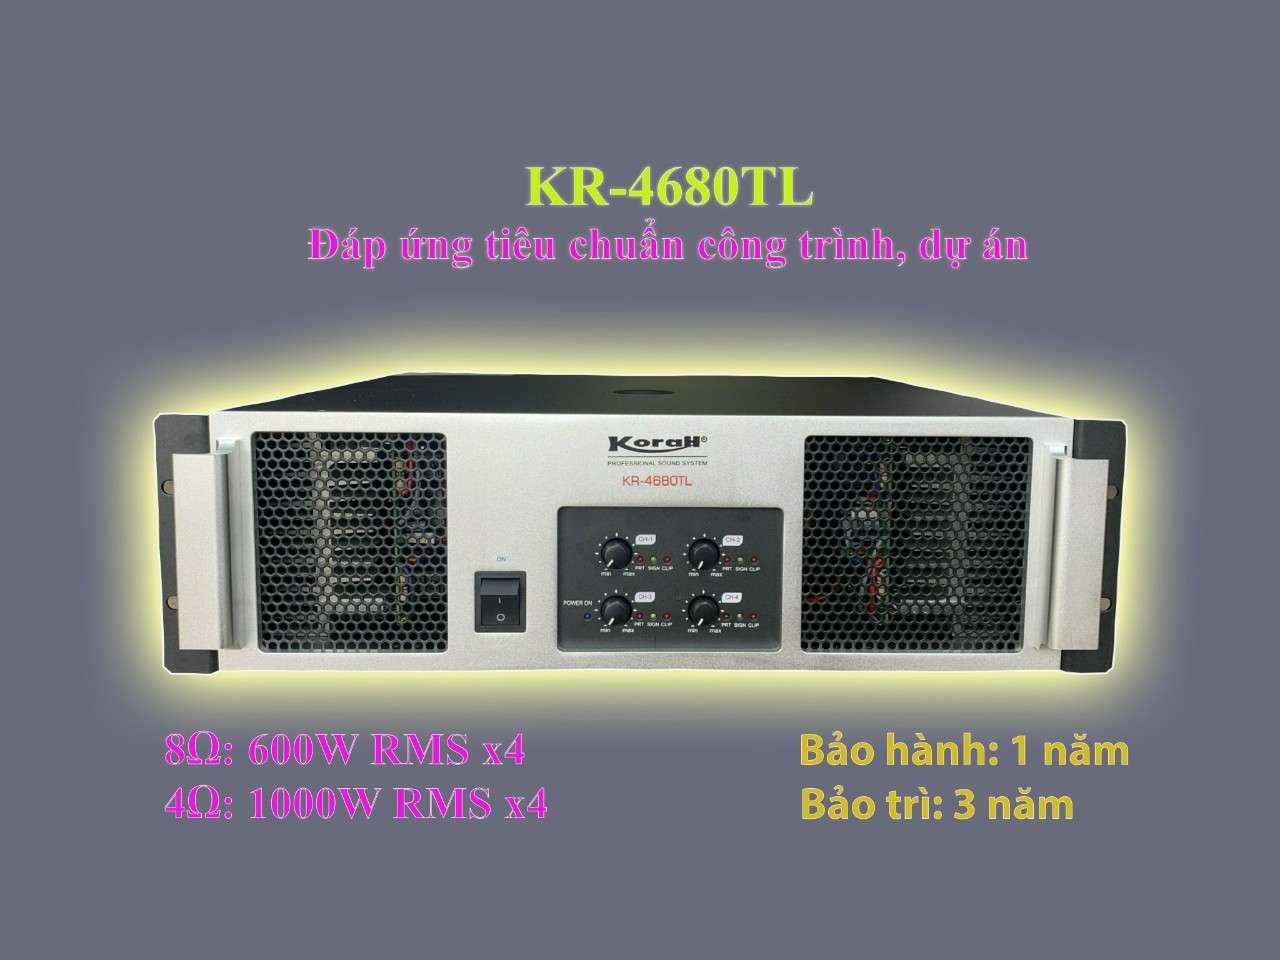 Main CS KR-4680TL